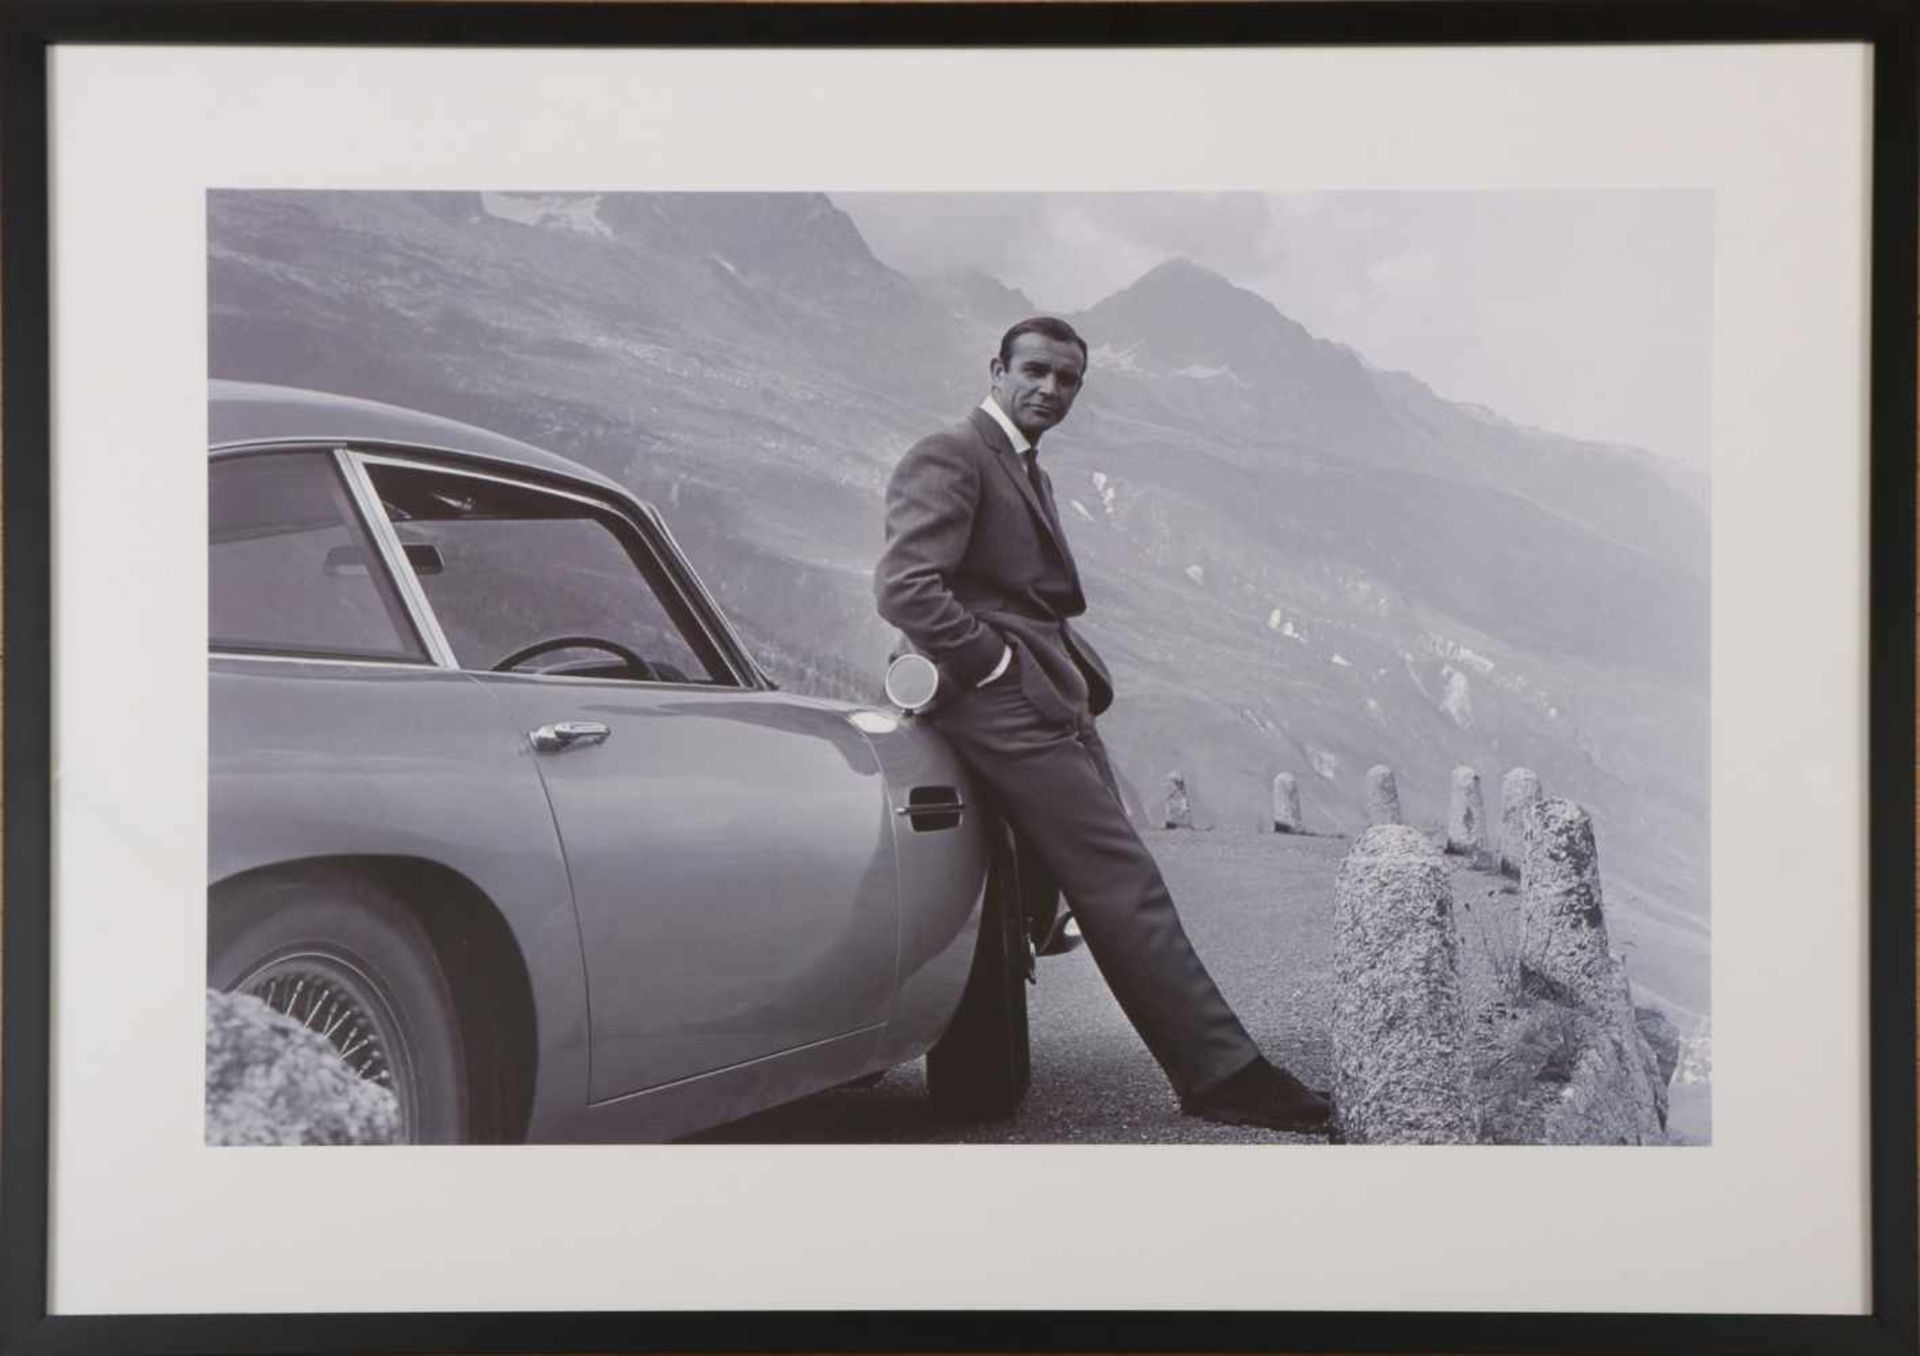 Foto-Druck ¨Sean Connery an Aston Martin gelehnt¨ Schwarzweiss-Fotografie zum Film ¨Goldfinger¨,